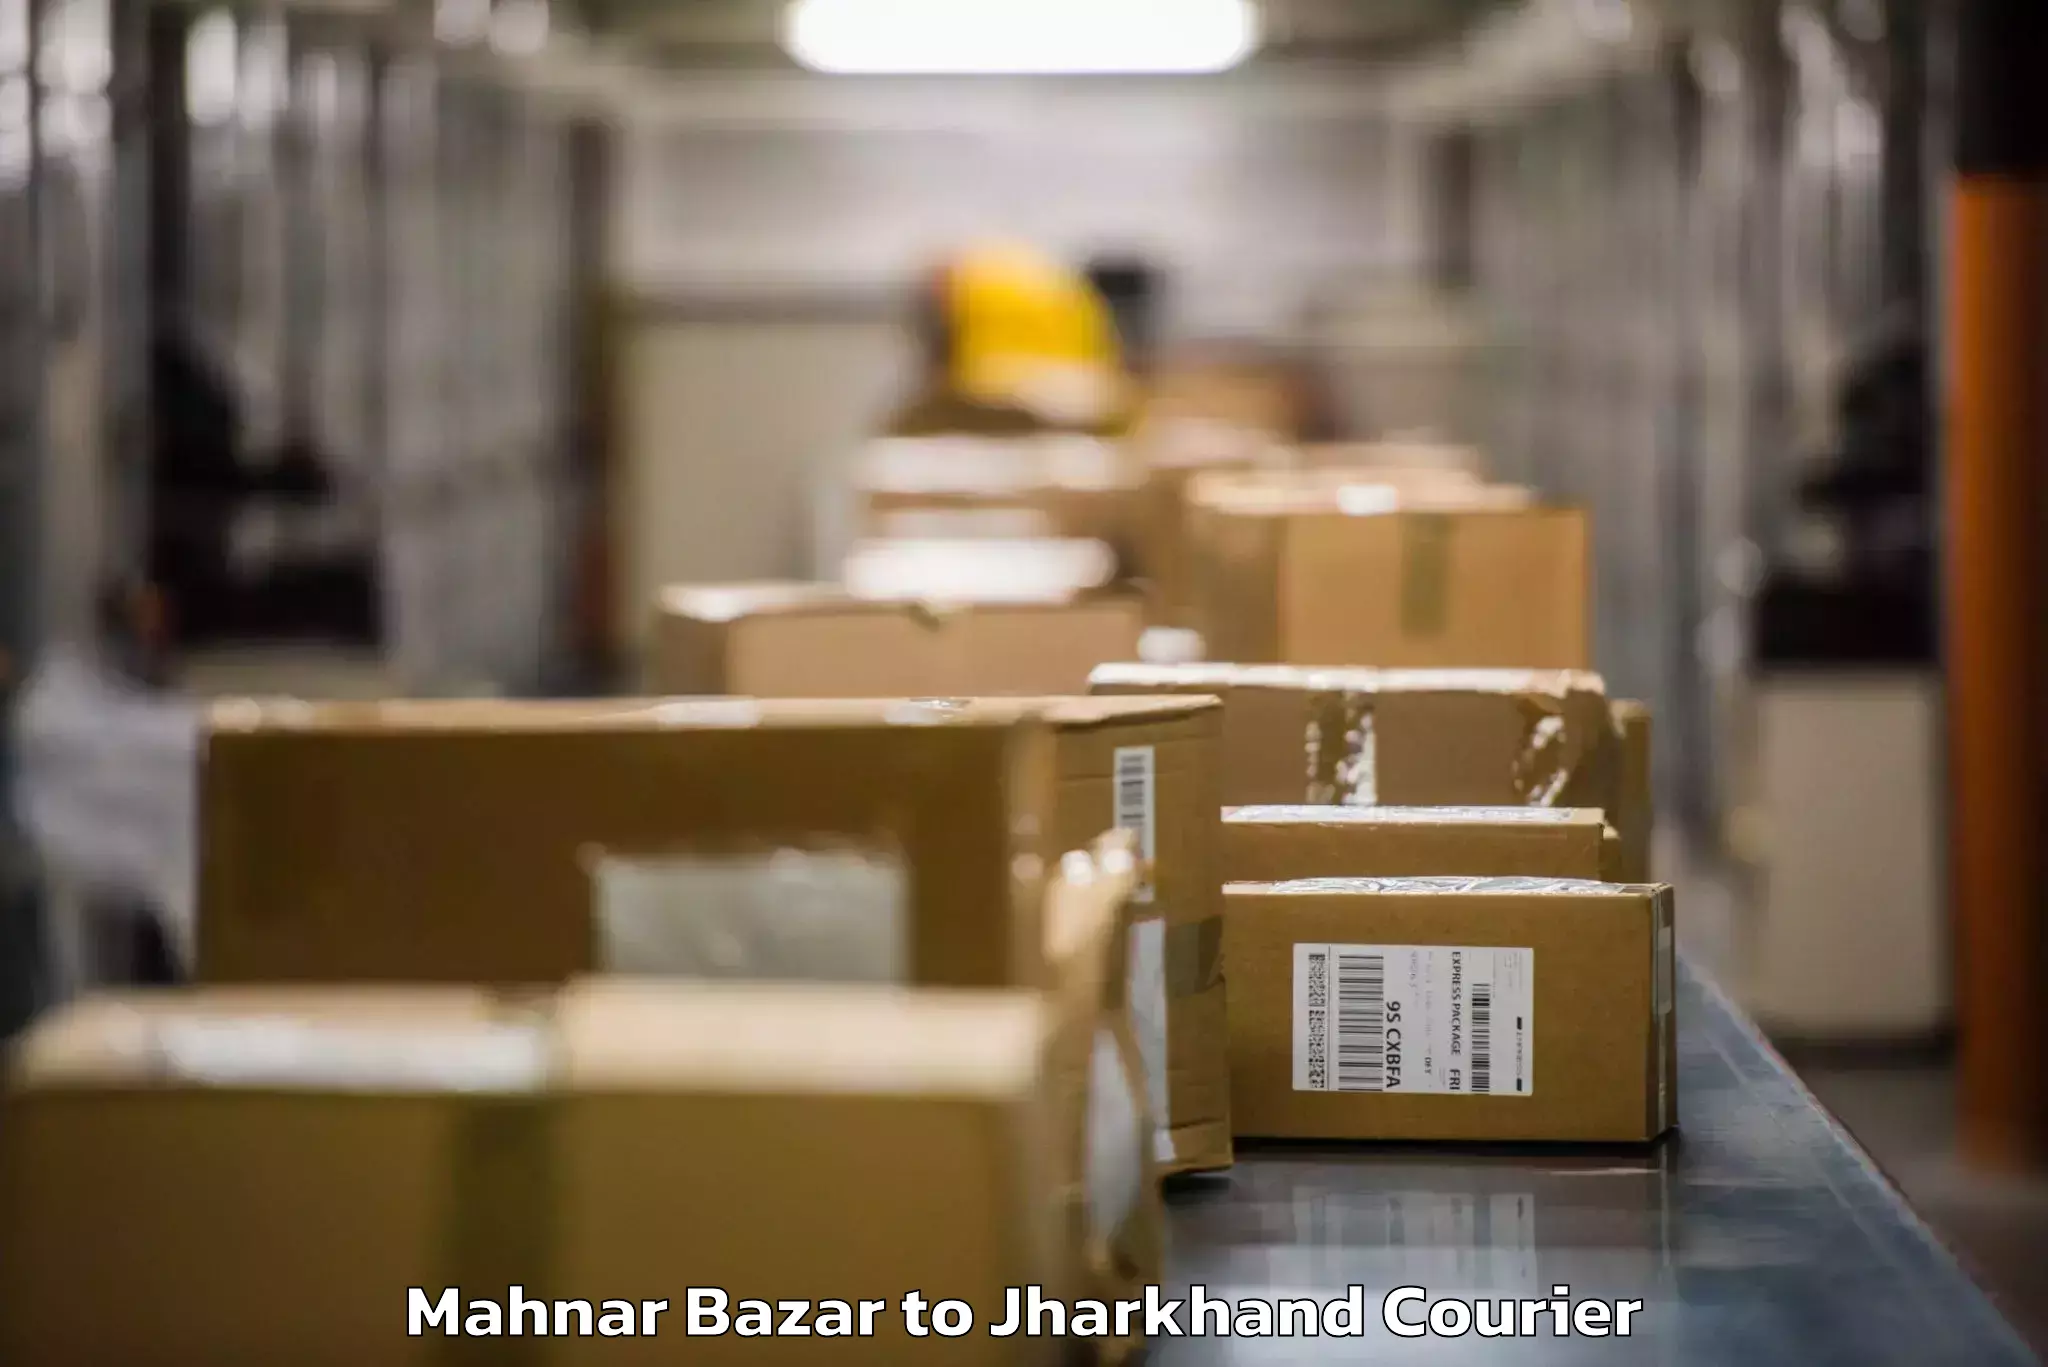 Baggage transport innovation Mahnar Bazar to Tisri